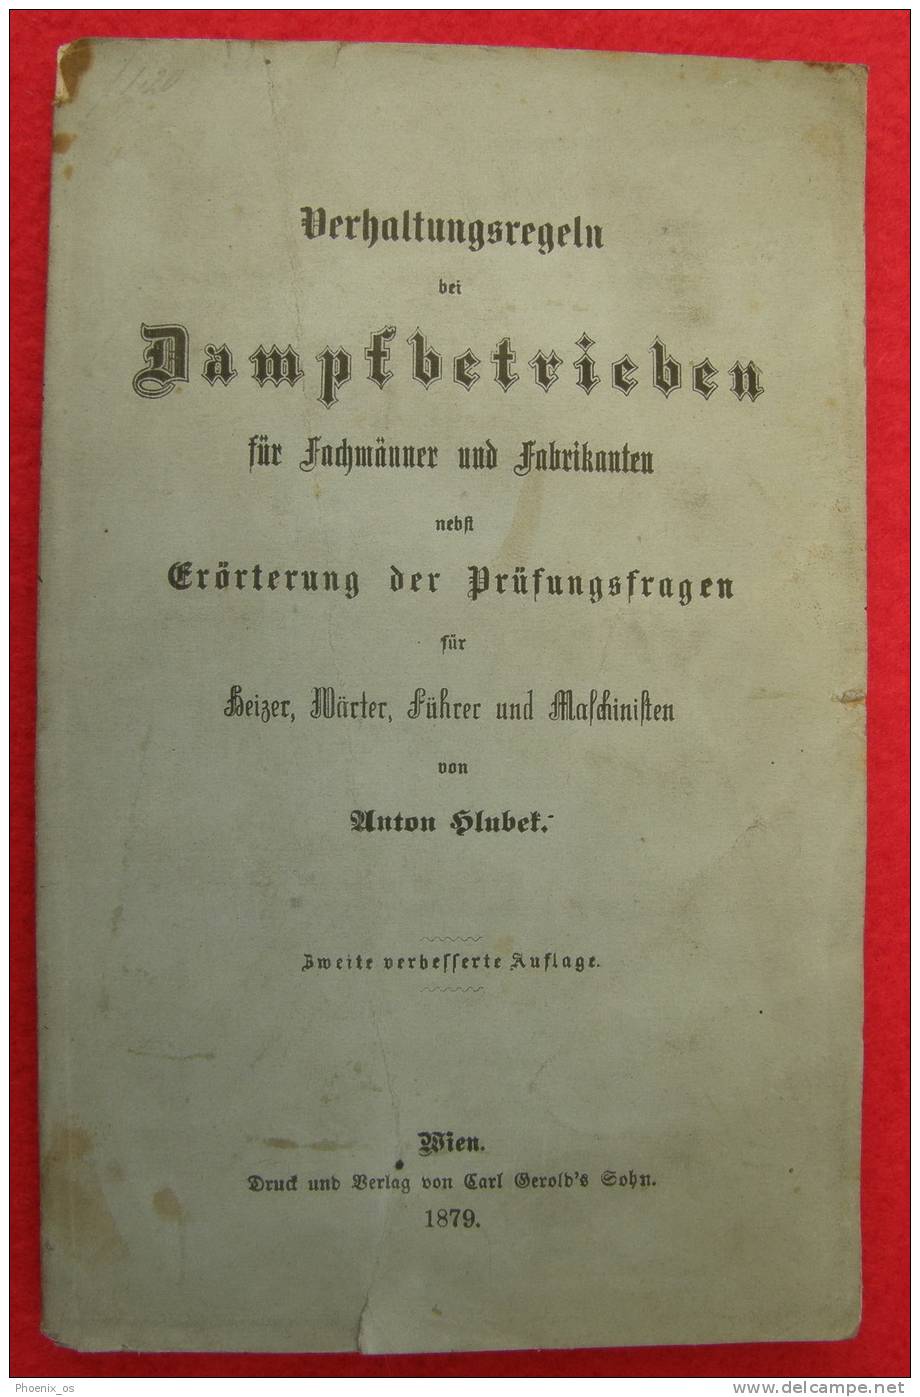 DAMPFBETRIEBEN - Wien, 1879. - Technical